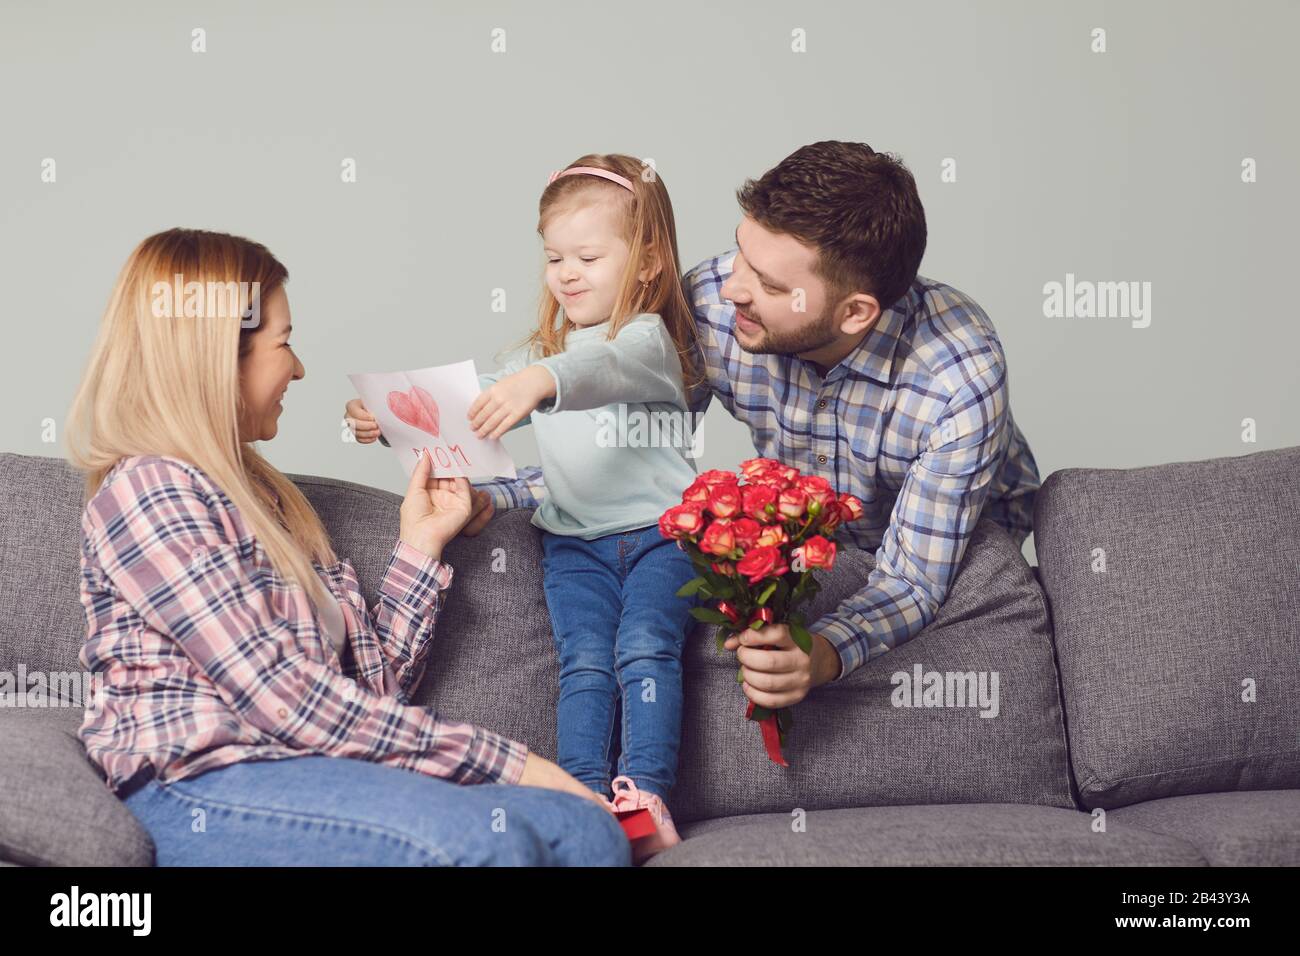 Buon giorno della madre. I bambini e il padre si congratulano con la mamma con i fiori dono Foto Stock